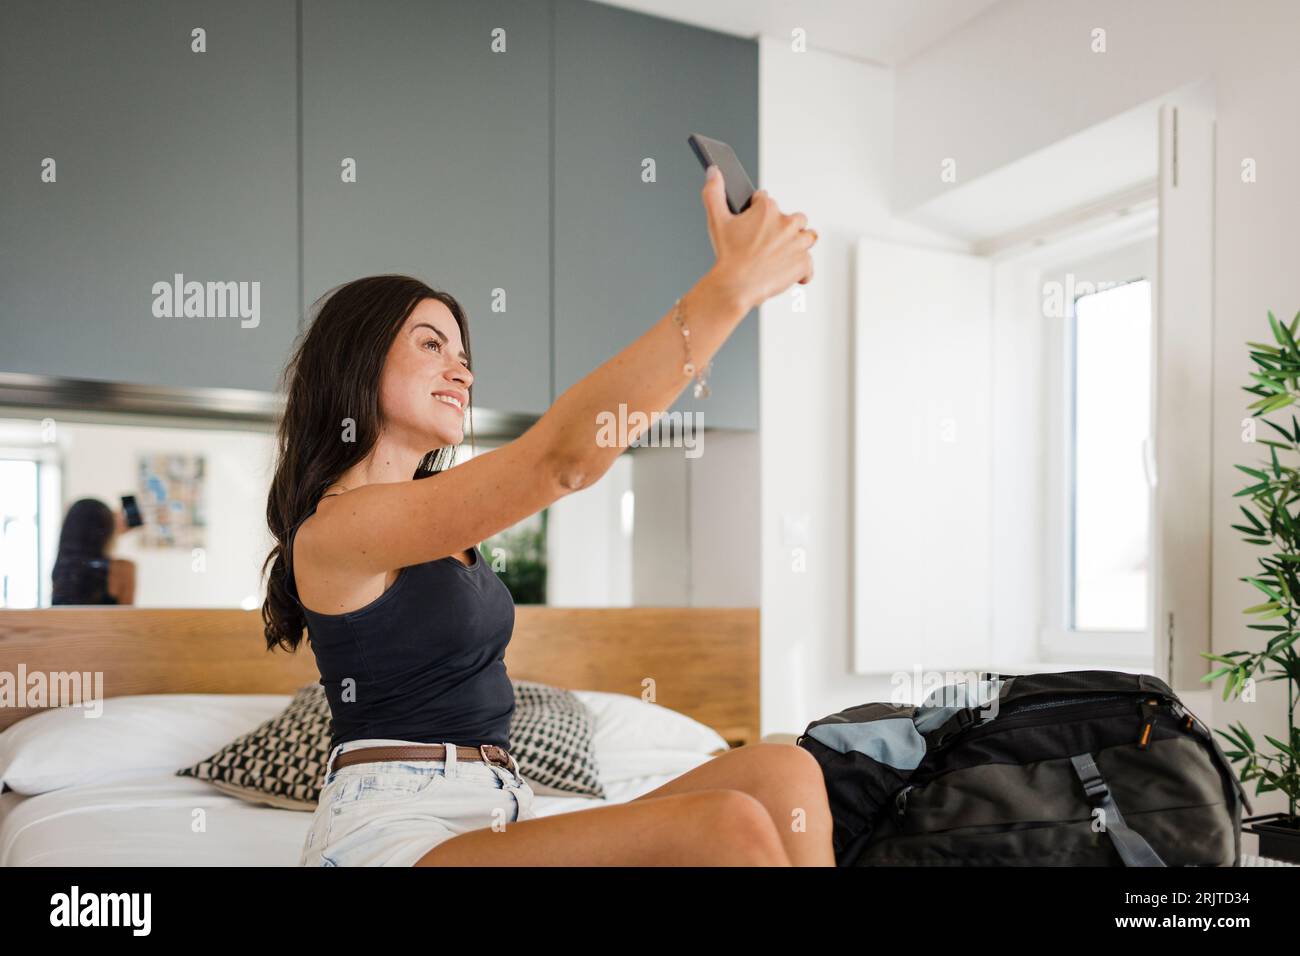 Glückliche junge Frau, die Selfie über Smartphone im Schlafzimmer nimmt Stockfoto